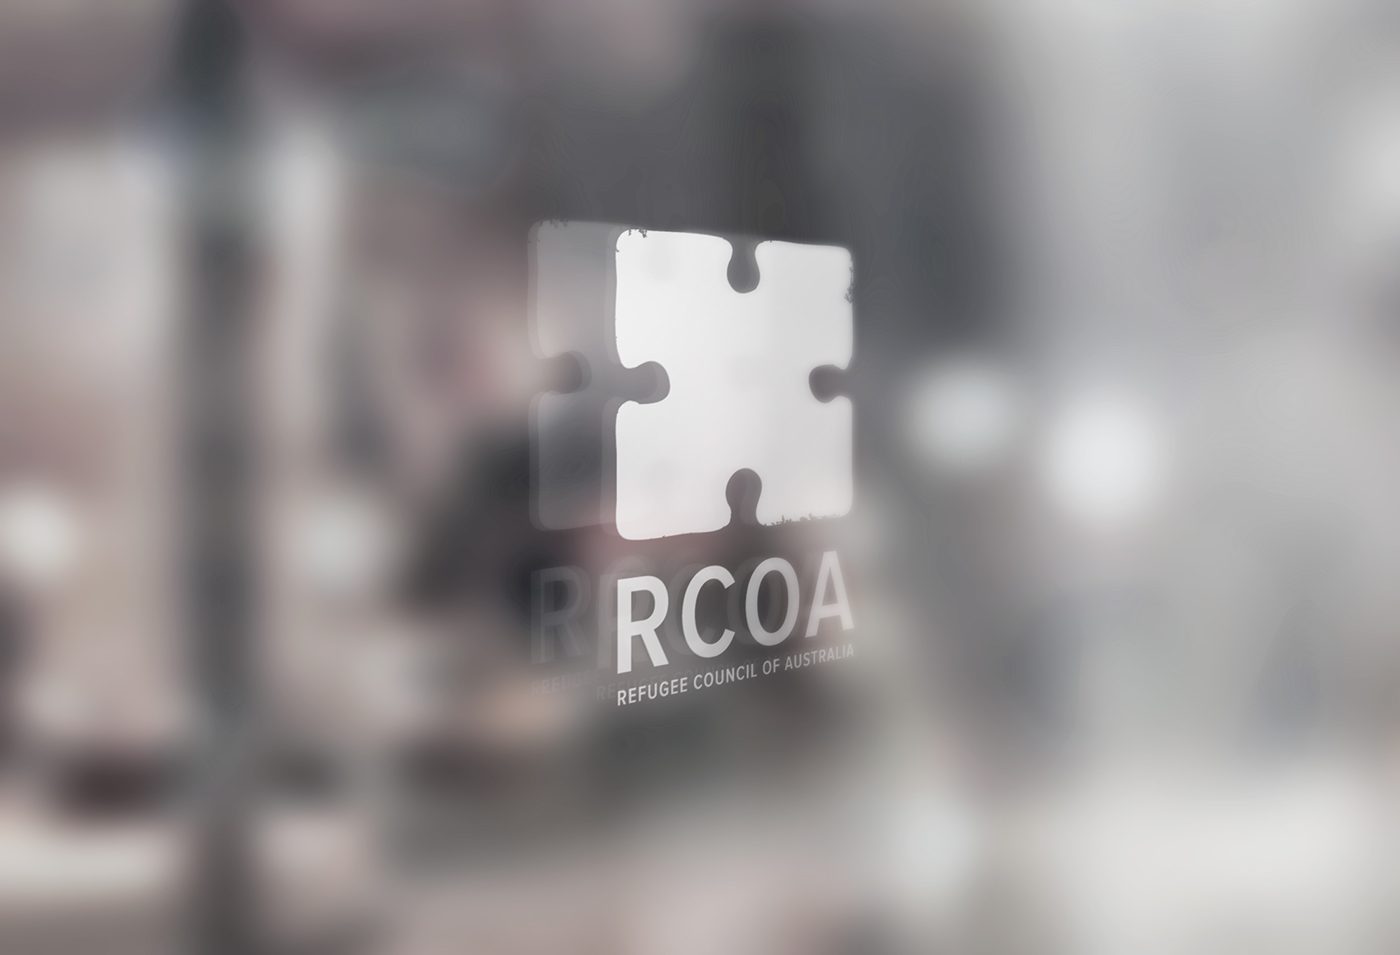 RCOA refugee logo identity refugee logo puzzle logo arrow logo human logo refugee council logo with stationary turquoise